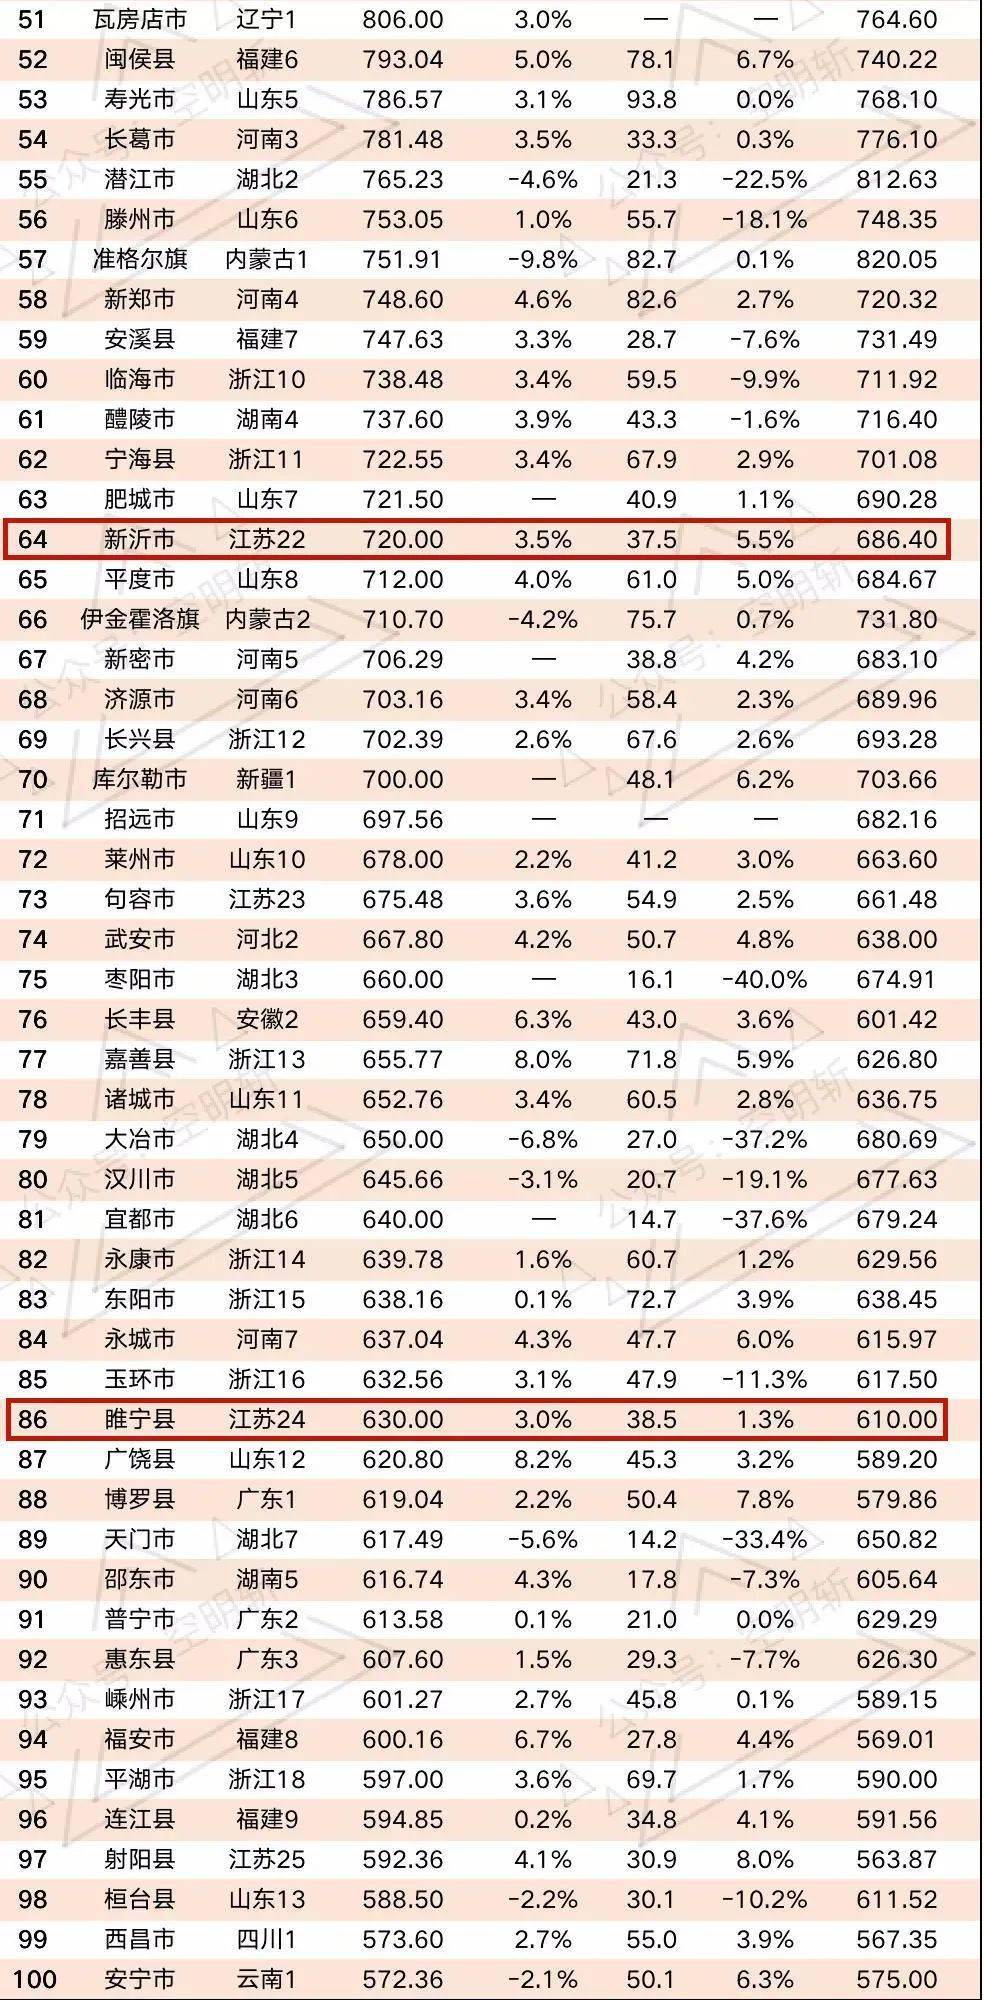 邳州2020年gdp是多少_徐州及各区县2020年GDP排名出炉